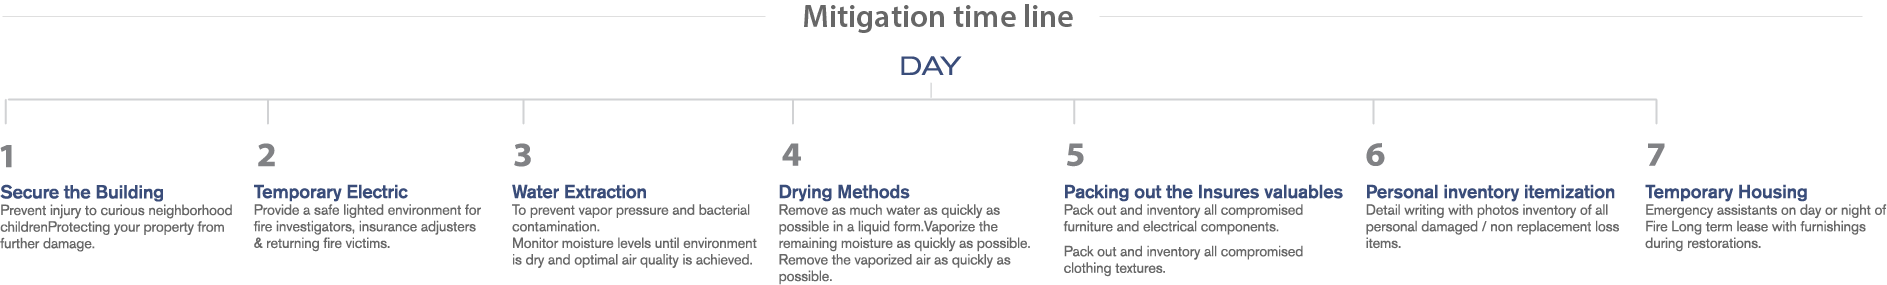 Mitigation-Timeline